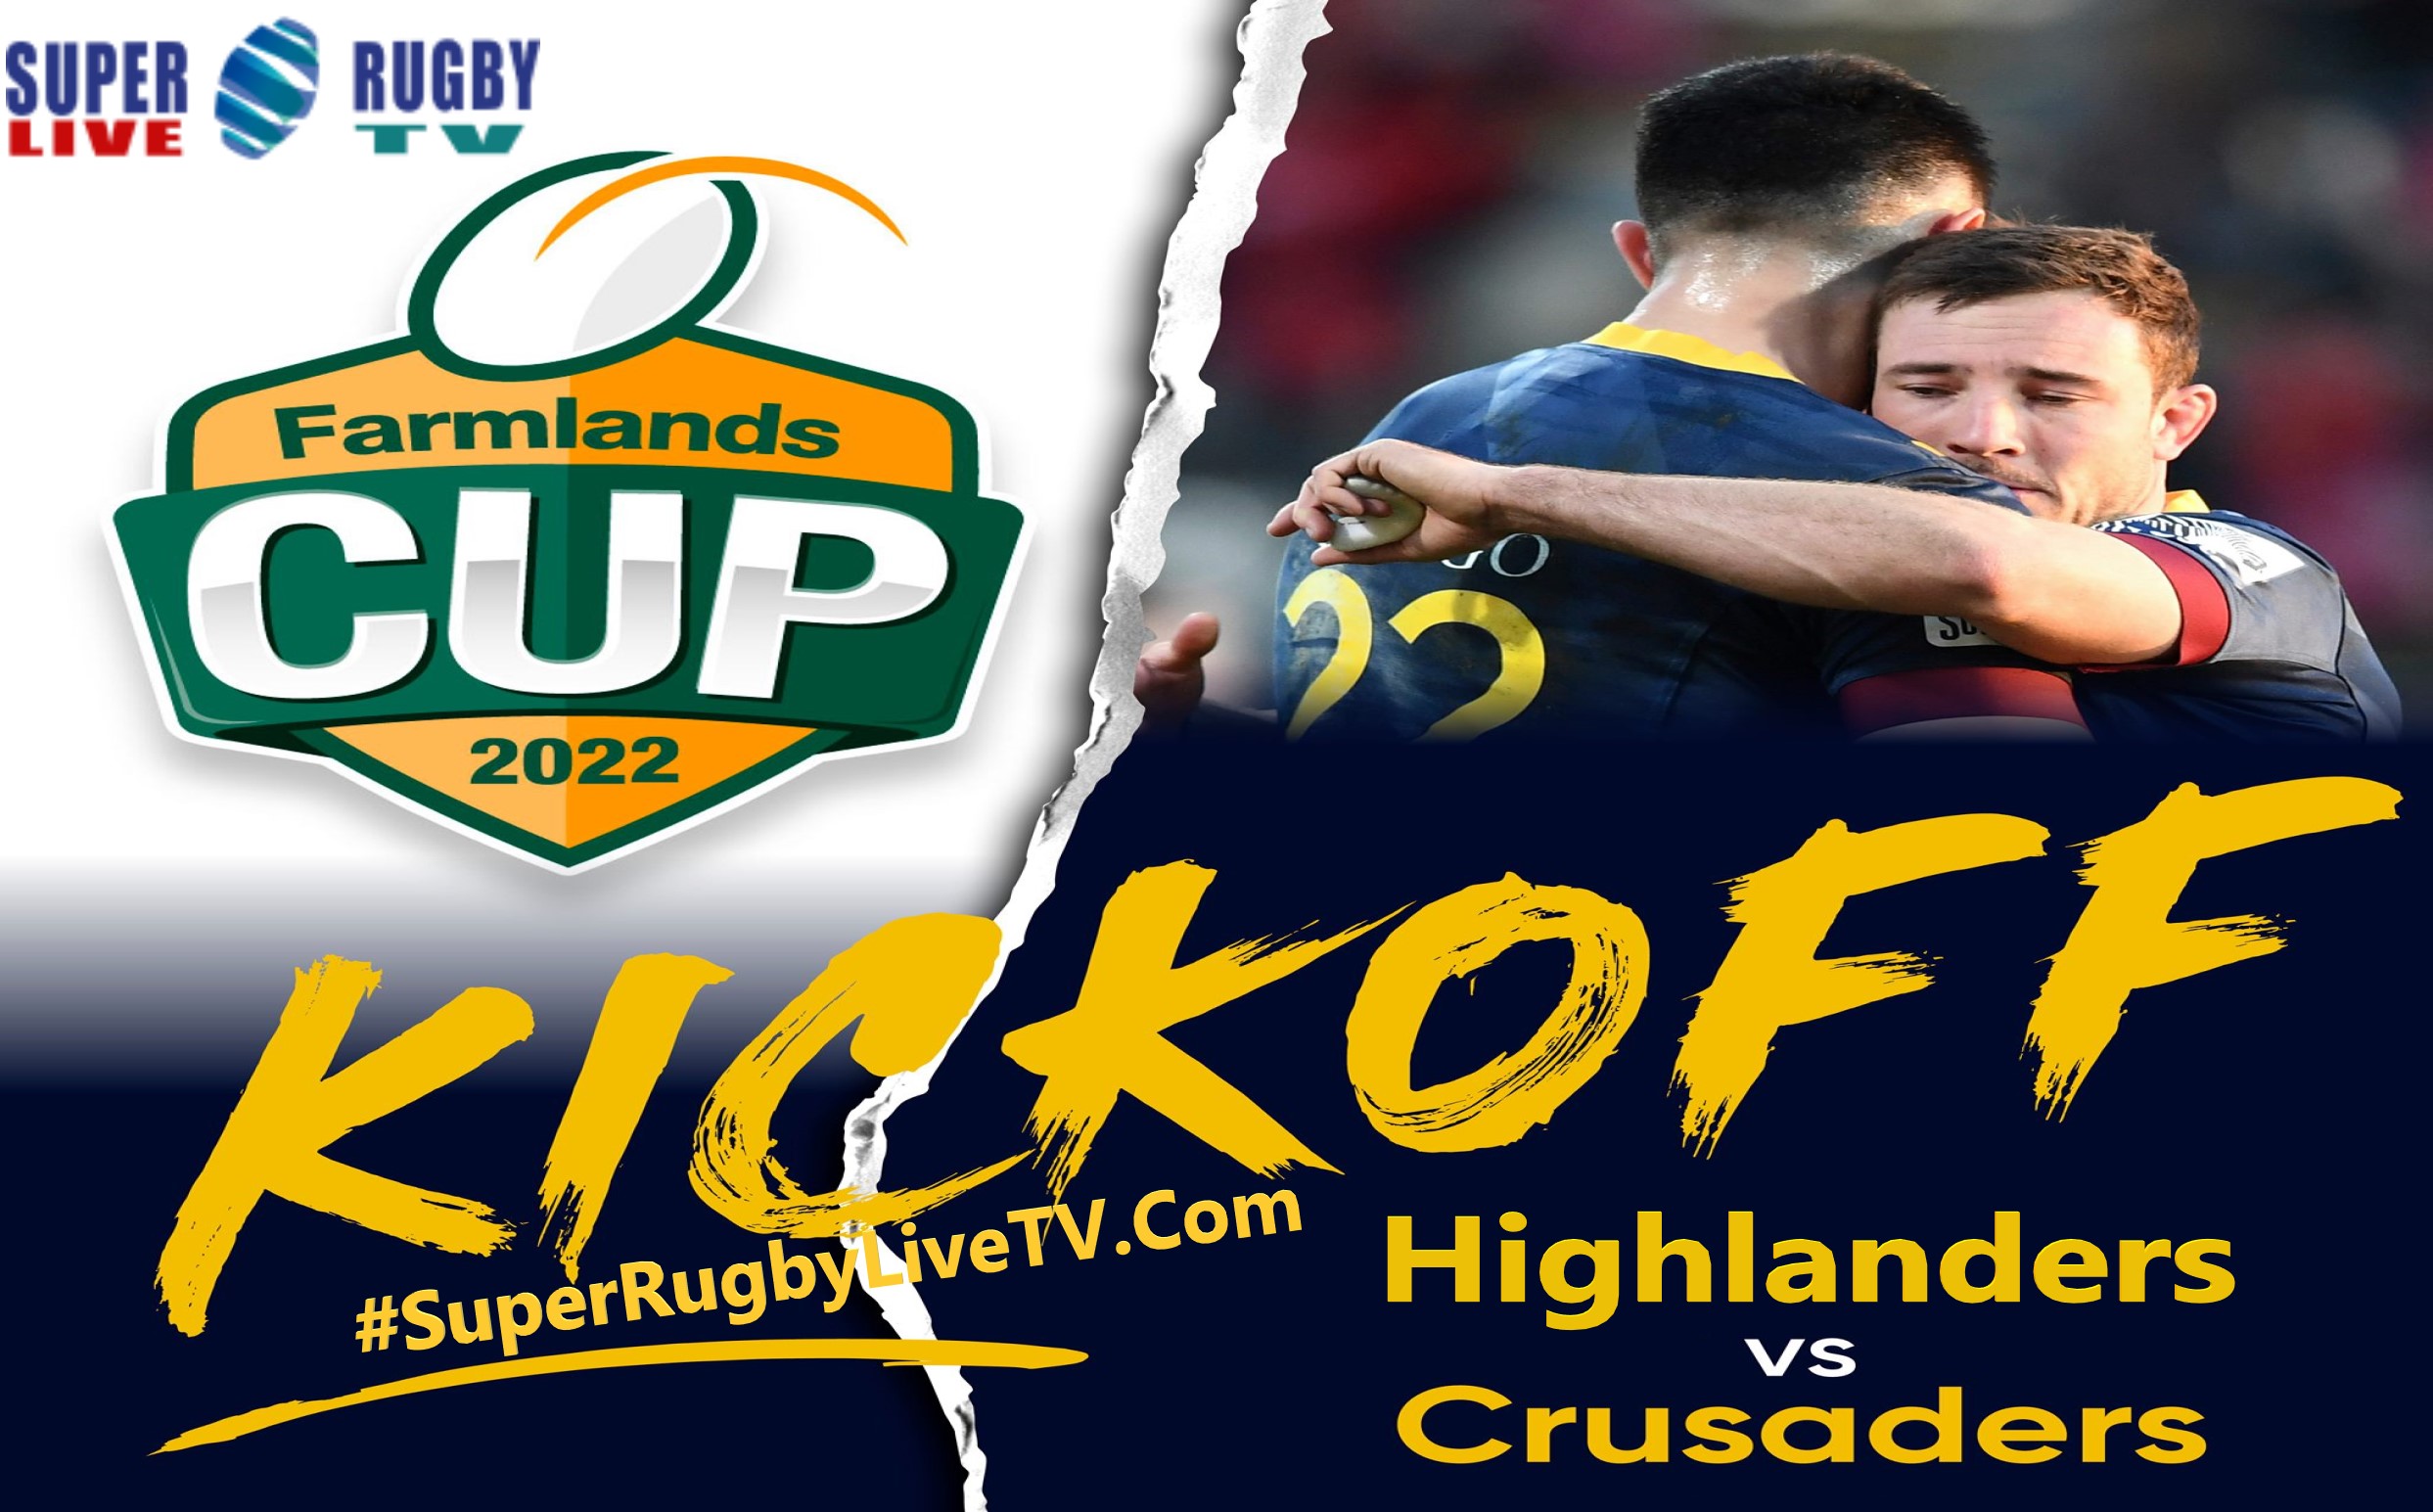 highlanders-vs-crusaders-performing-in-farmlands-cup-2022-live-stream